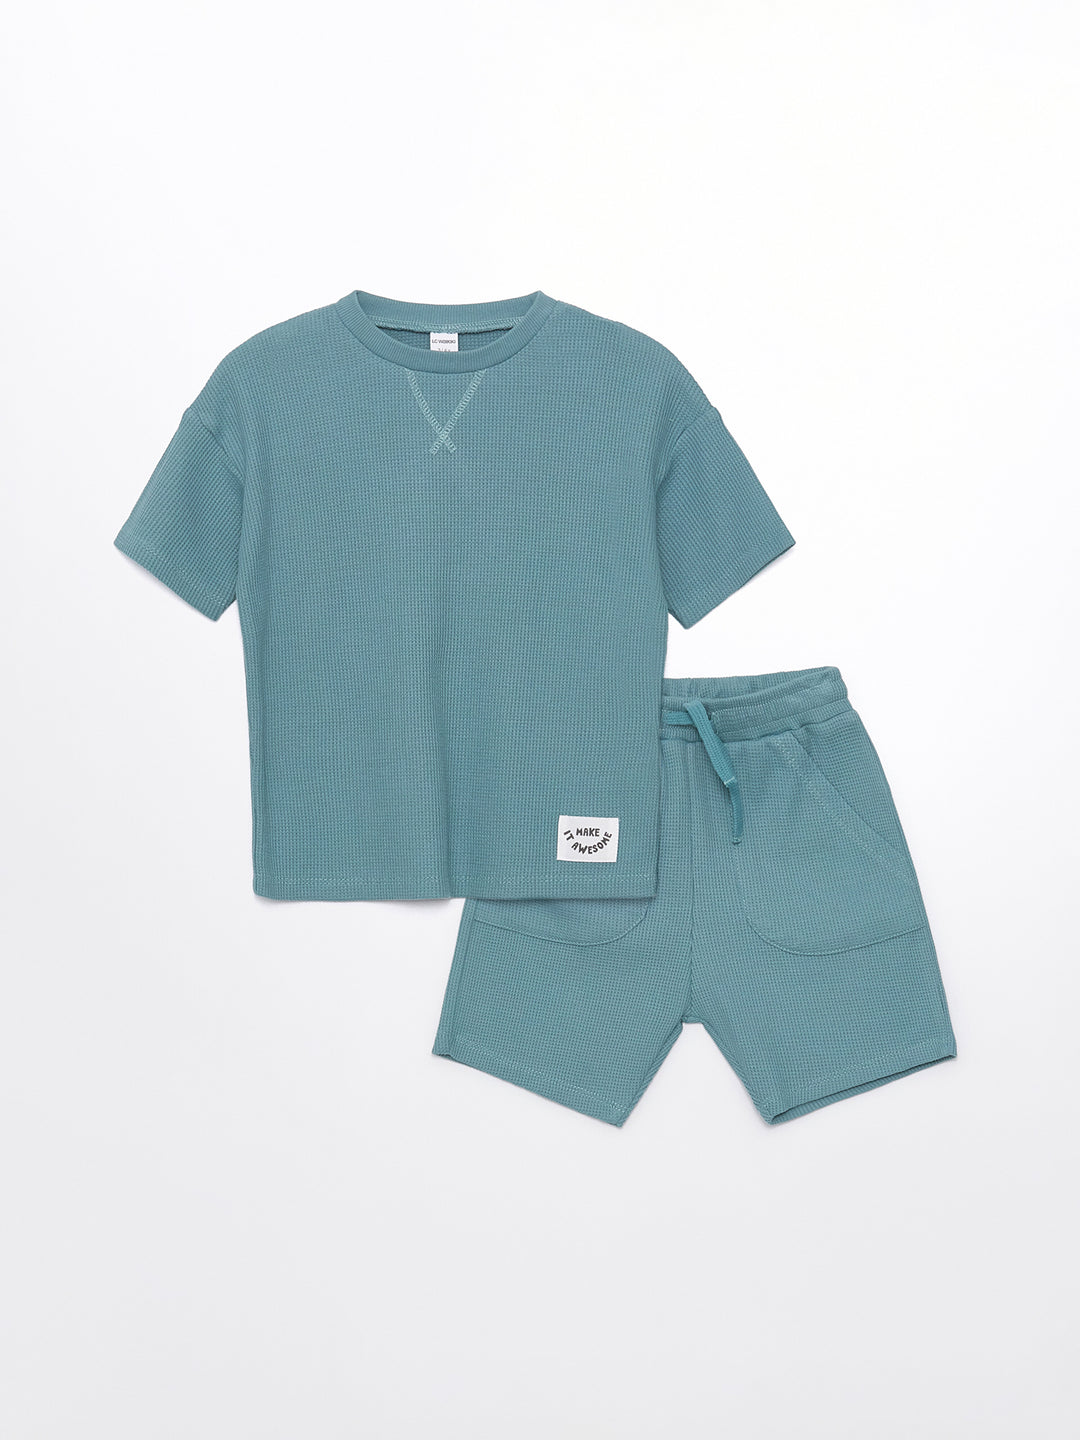 Crew Neck Basic Baby Boy T-Shirt and Shorts Set of 2